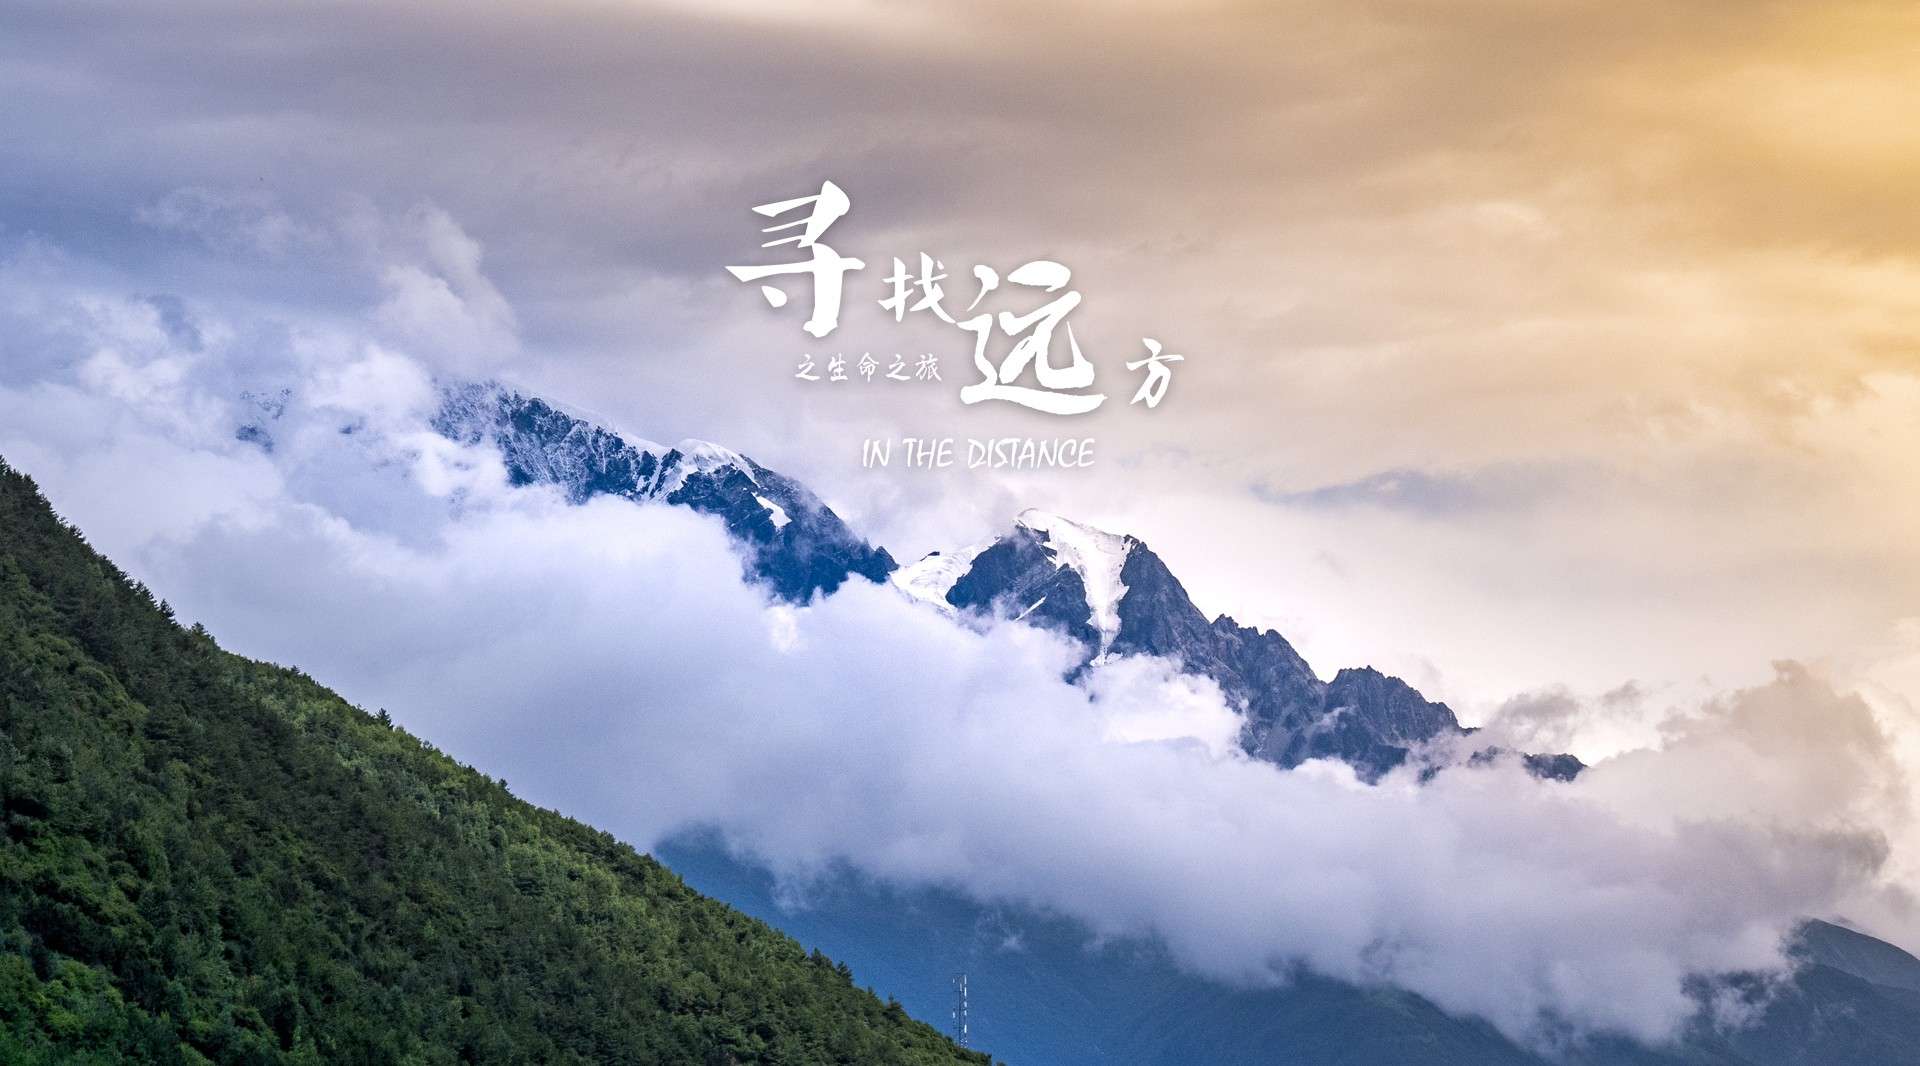 《寻找远方之生命之旅》—318川藏线